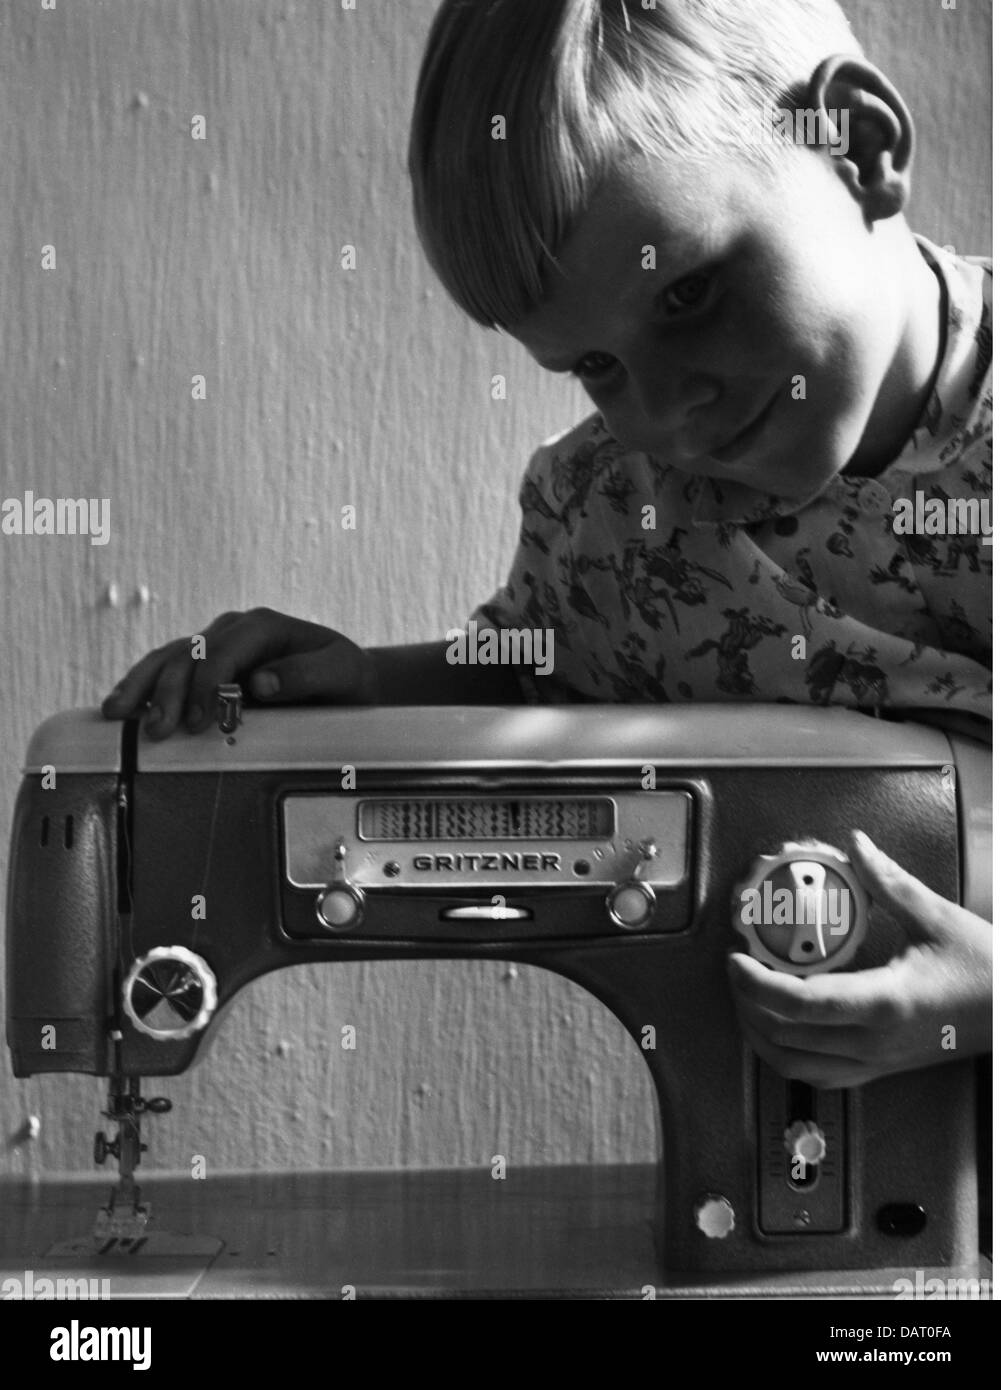 Machines à coudre, à coudre et à coudre, machine à coudre avec échelle pour les stiles de couture ornementales, fabriqué par: Gritzner-Kayser AG, 1957, droits additionnels-Clearences-non disponible Banque D'Images